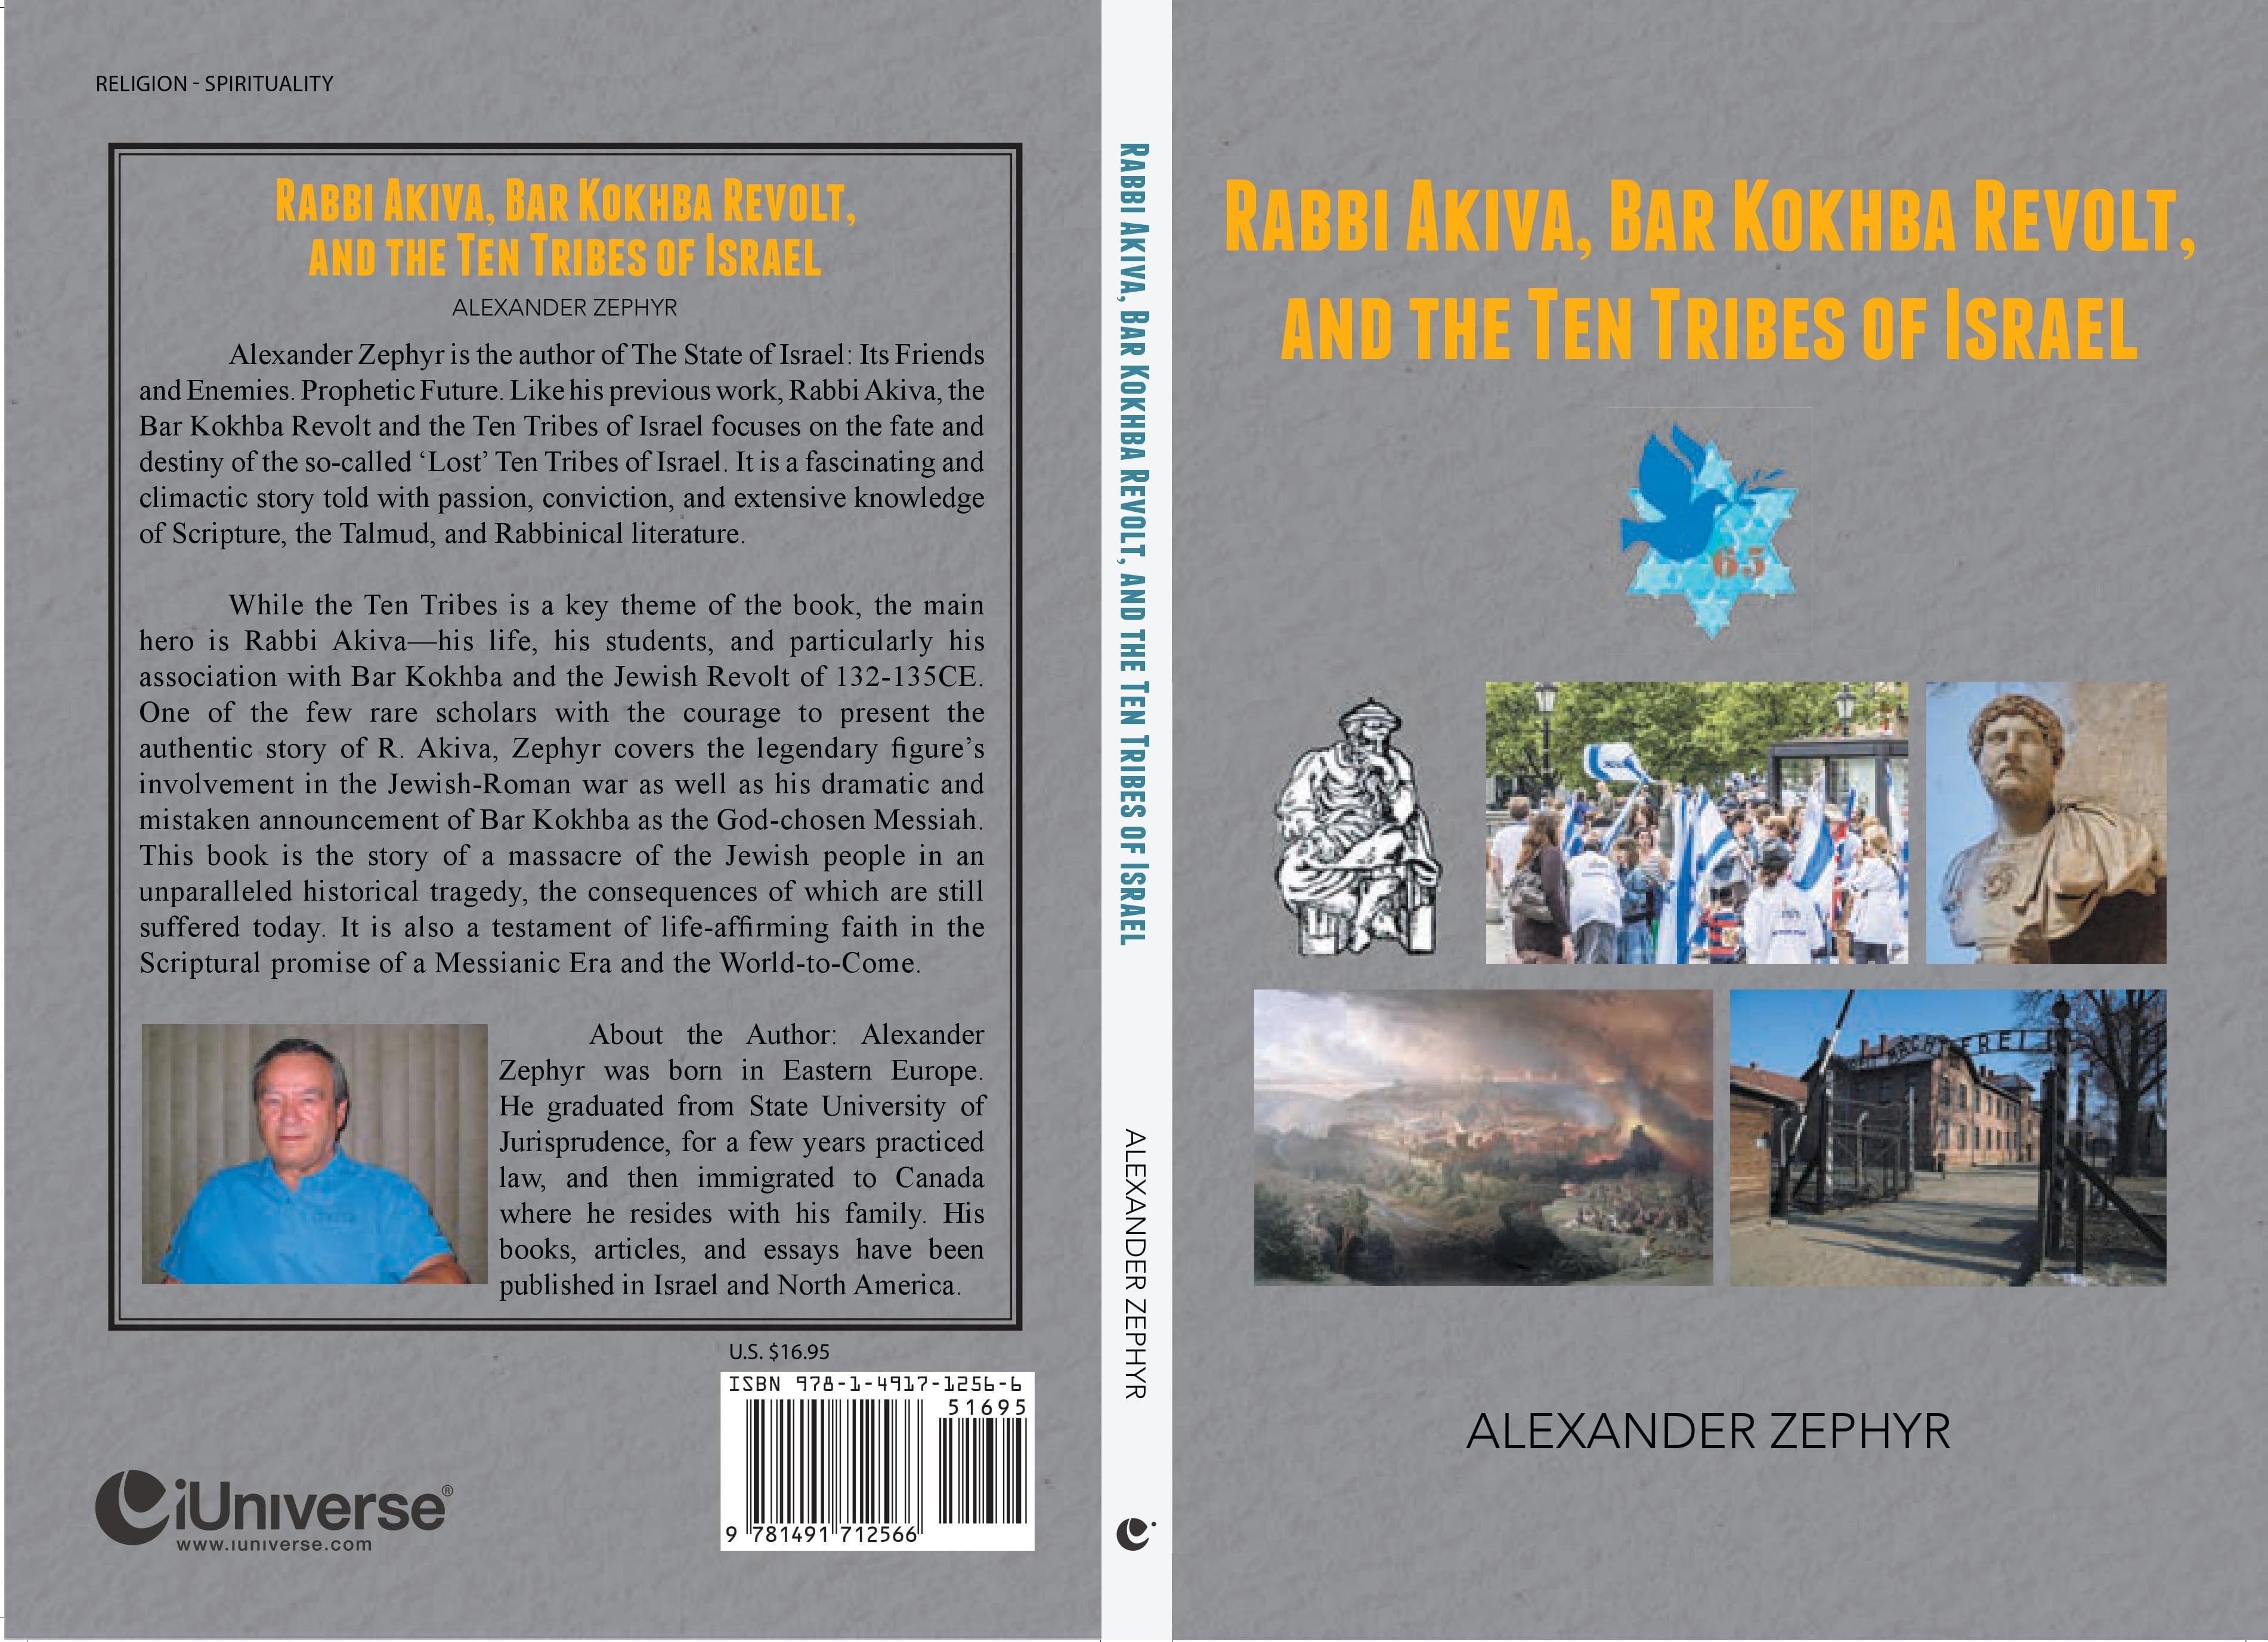 Alexander Zephyr : Rabbi Akiva Bar Kokhba revolt and the ten tribes of Israel